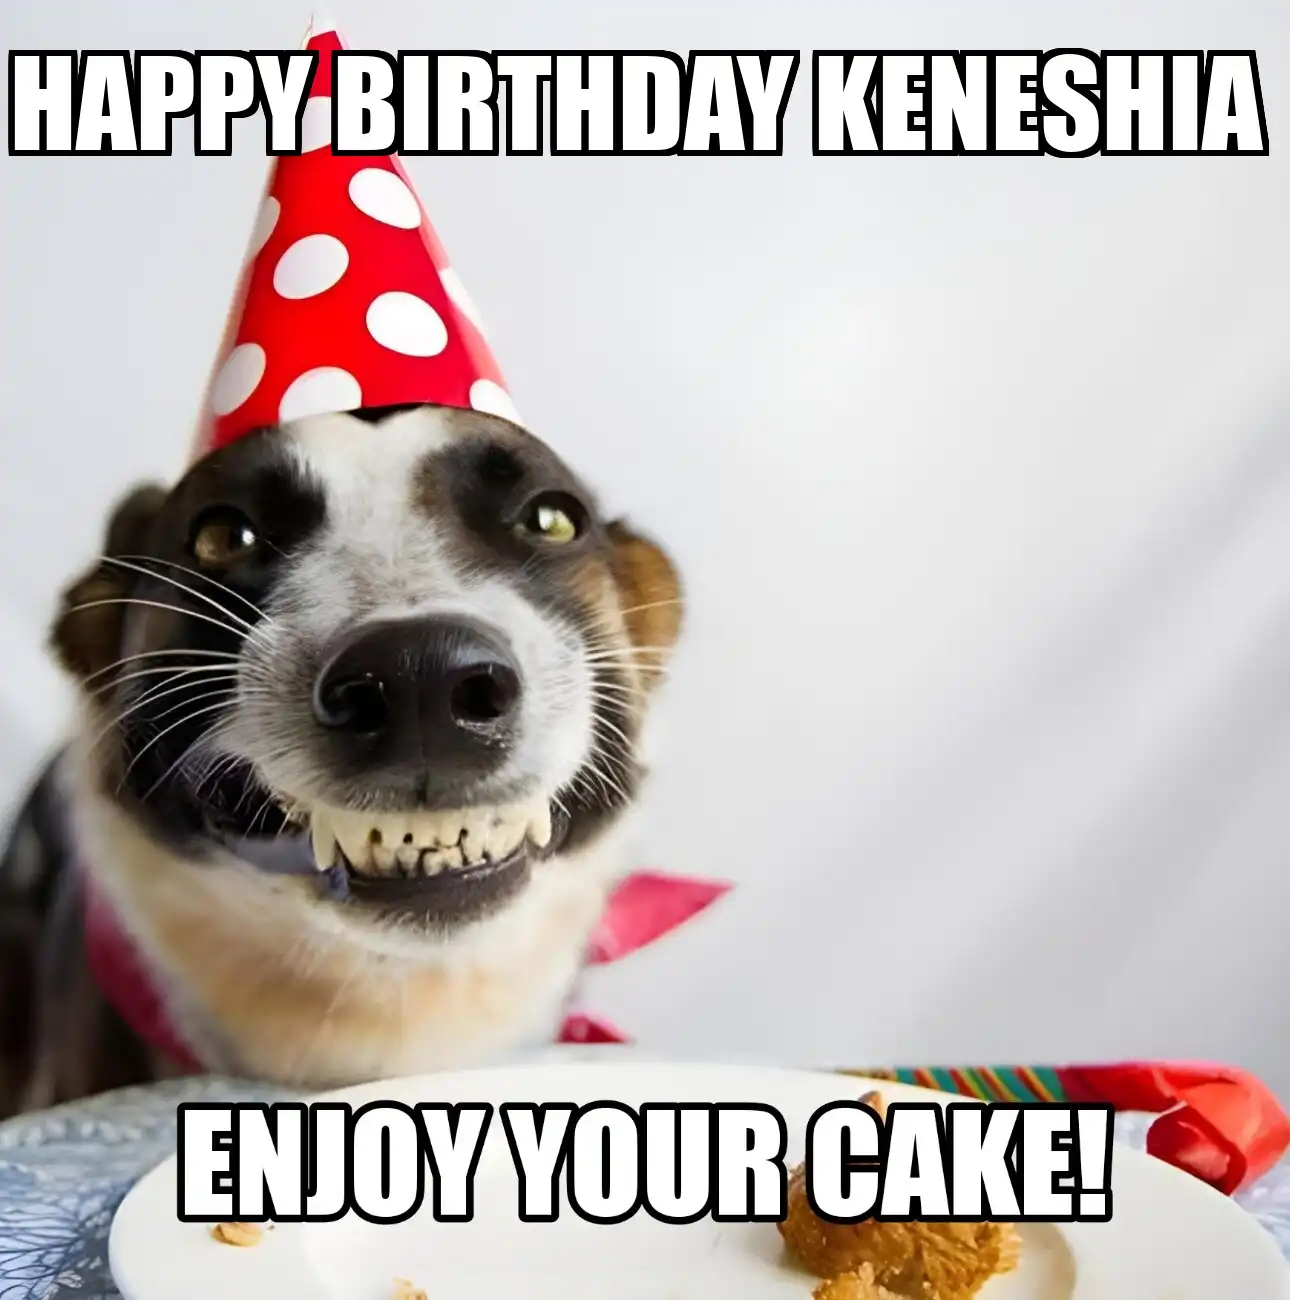 Happy Birthday Keneshia Enjoy Your Cake Dog Meme